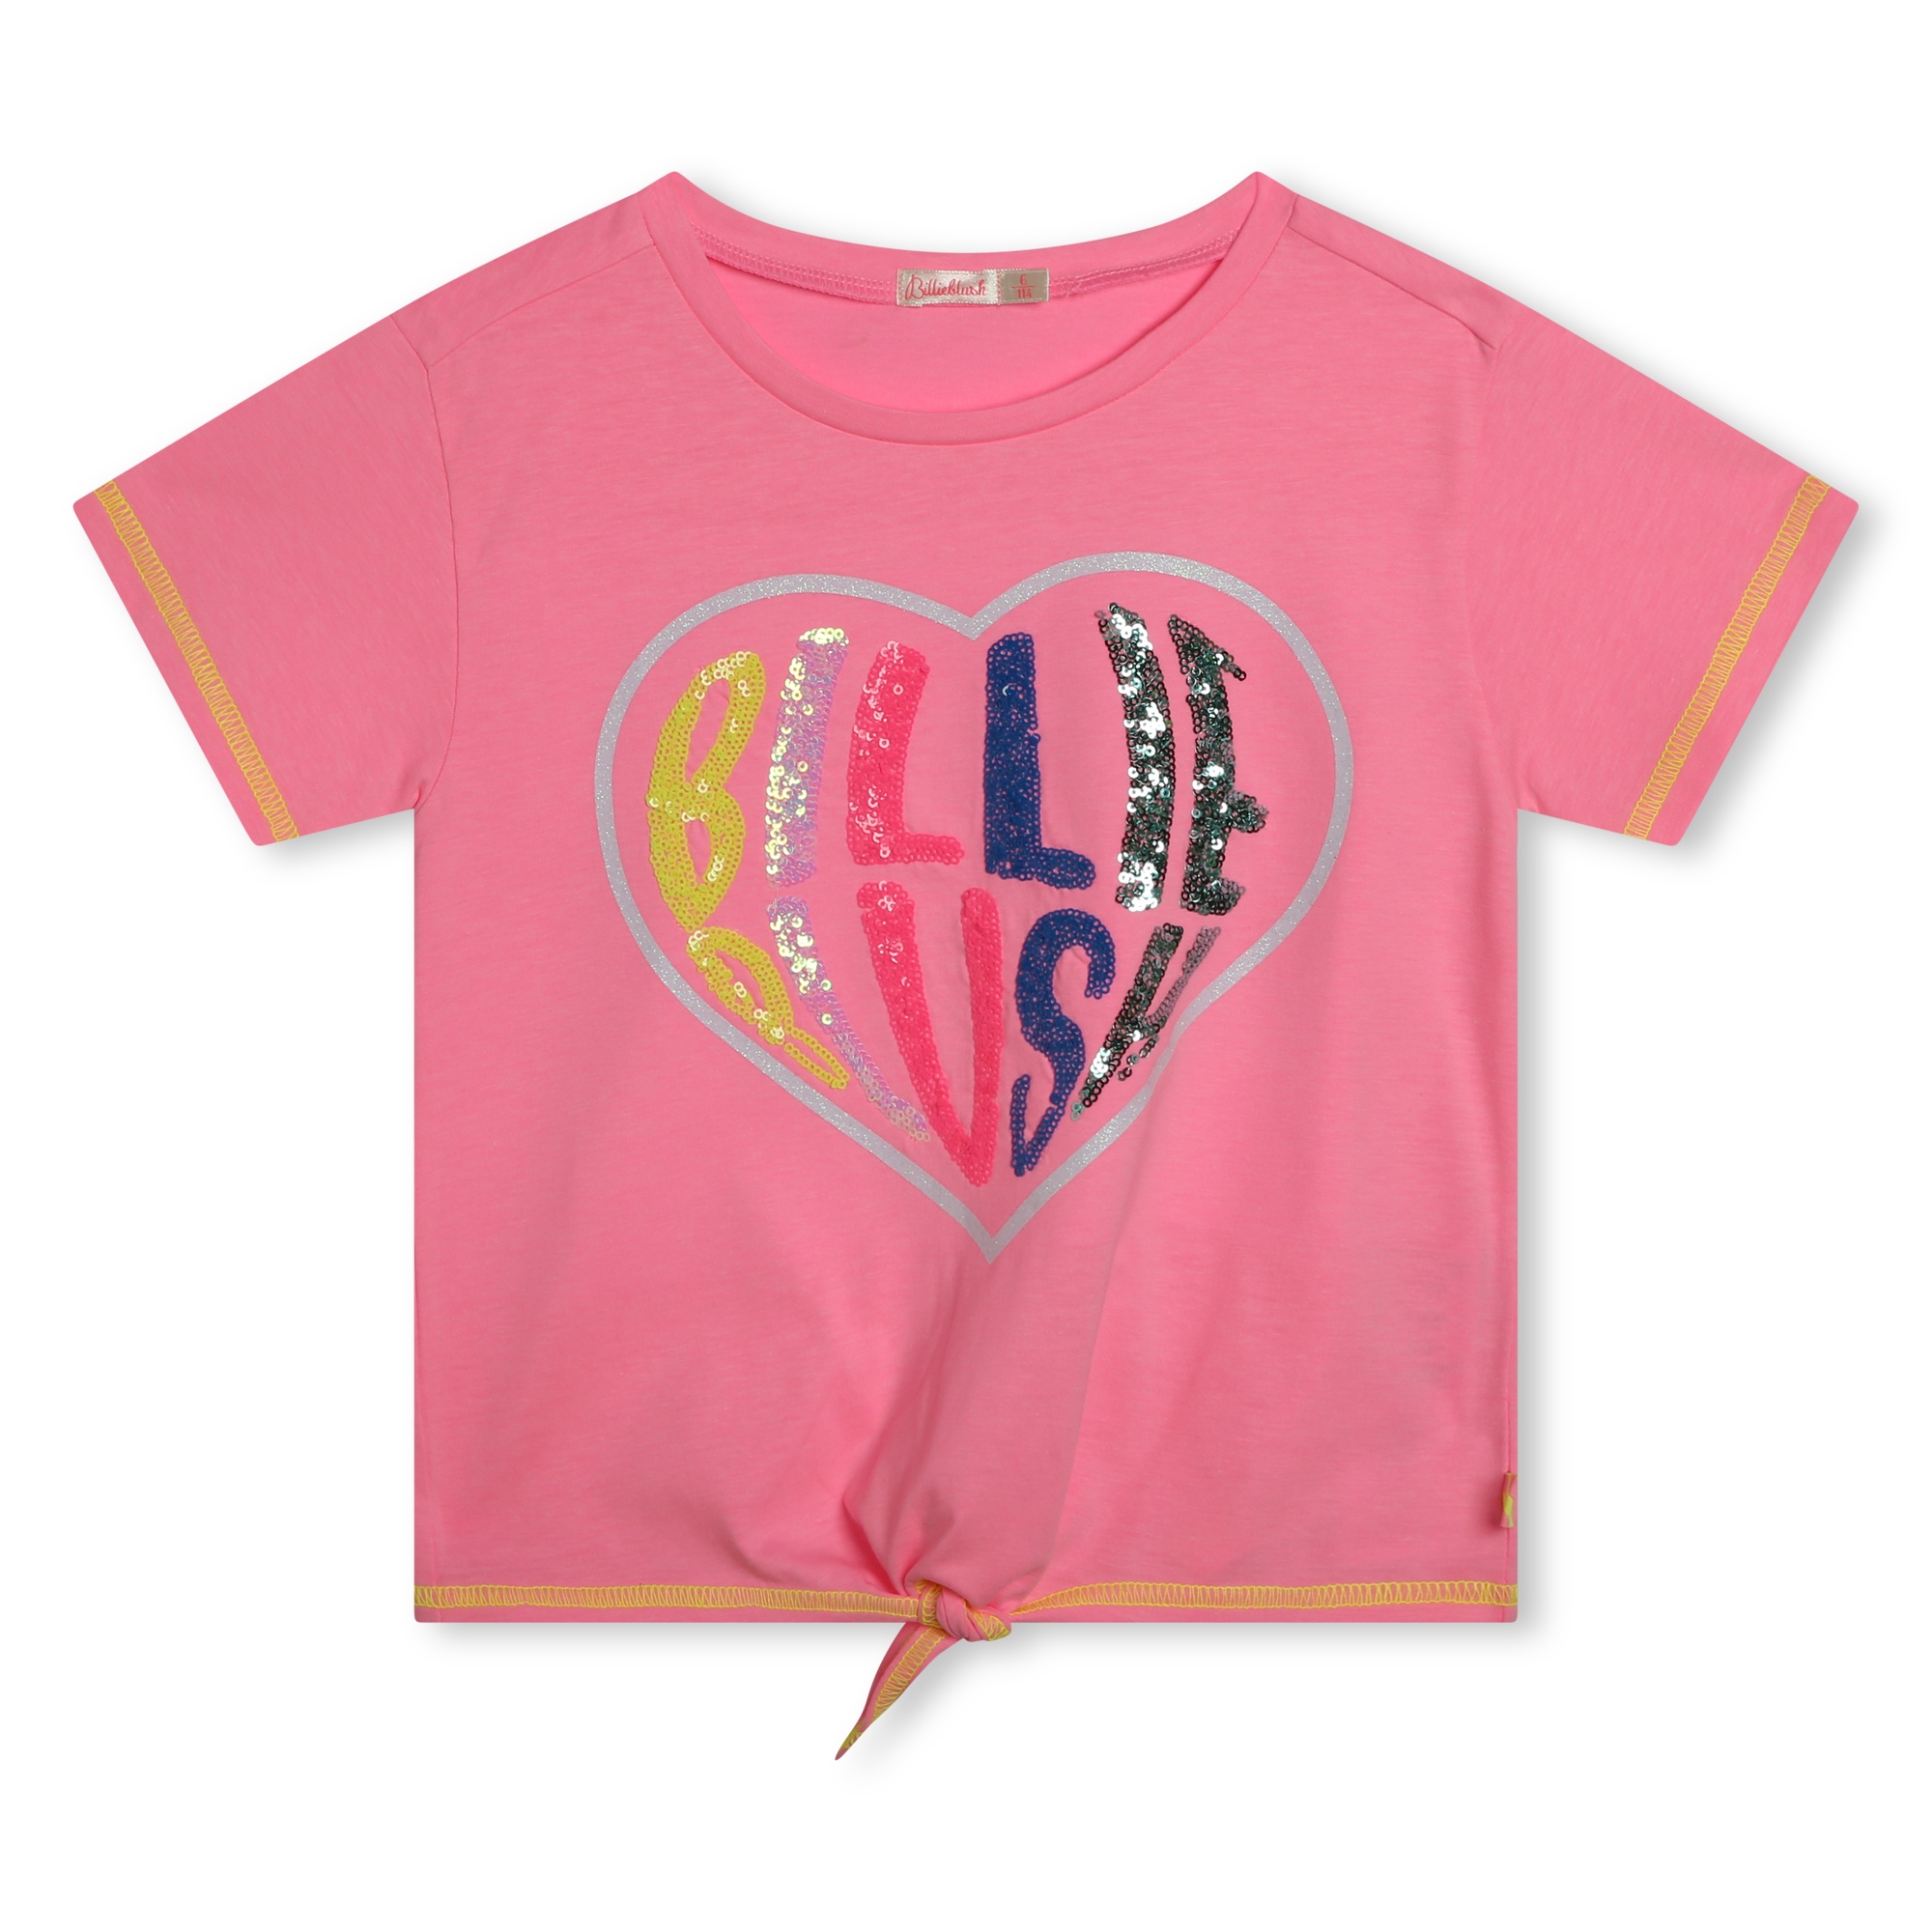 Dívčí tričko - logo Billieblush a srdce jsou vyrobeny z vícebarevných flitrů BILLIEBLUSH